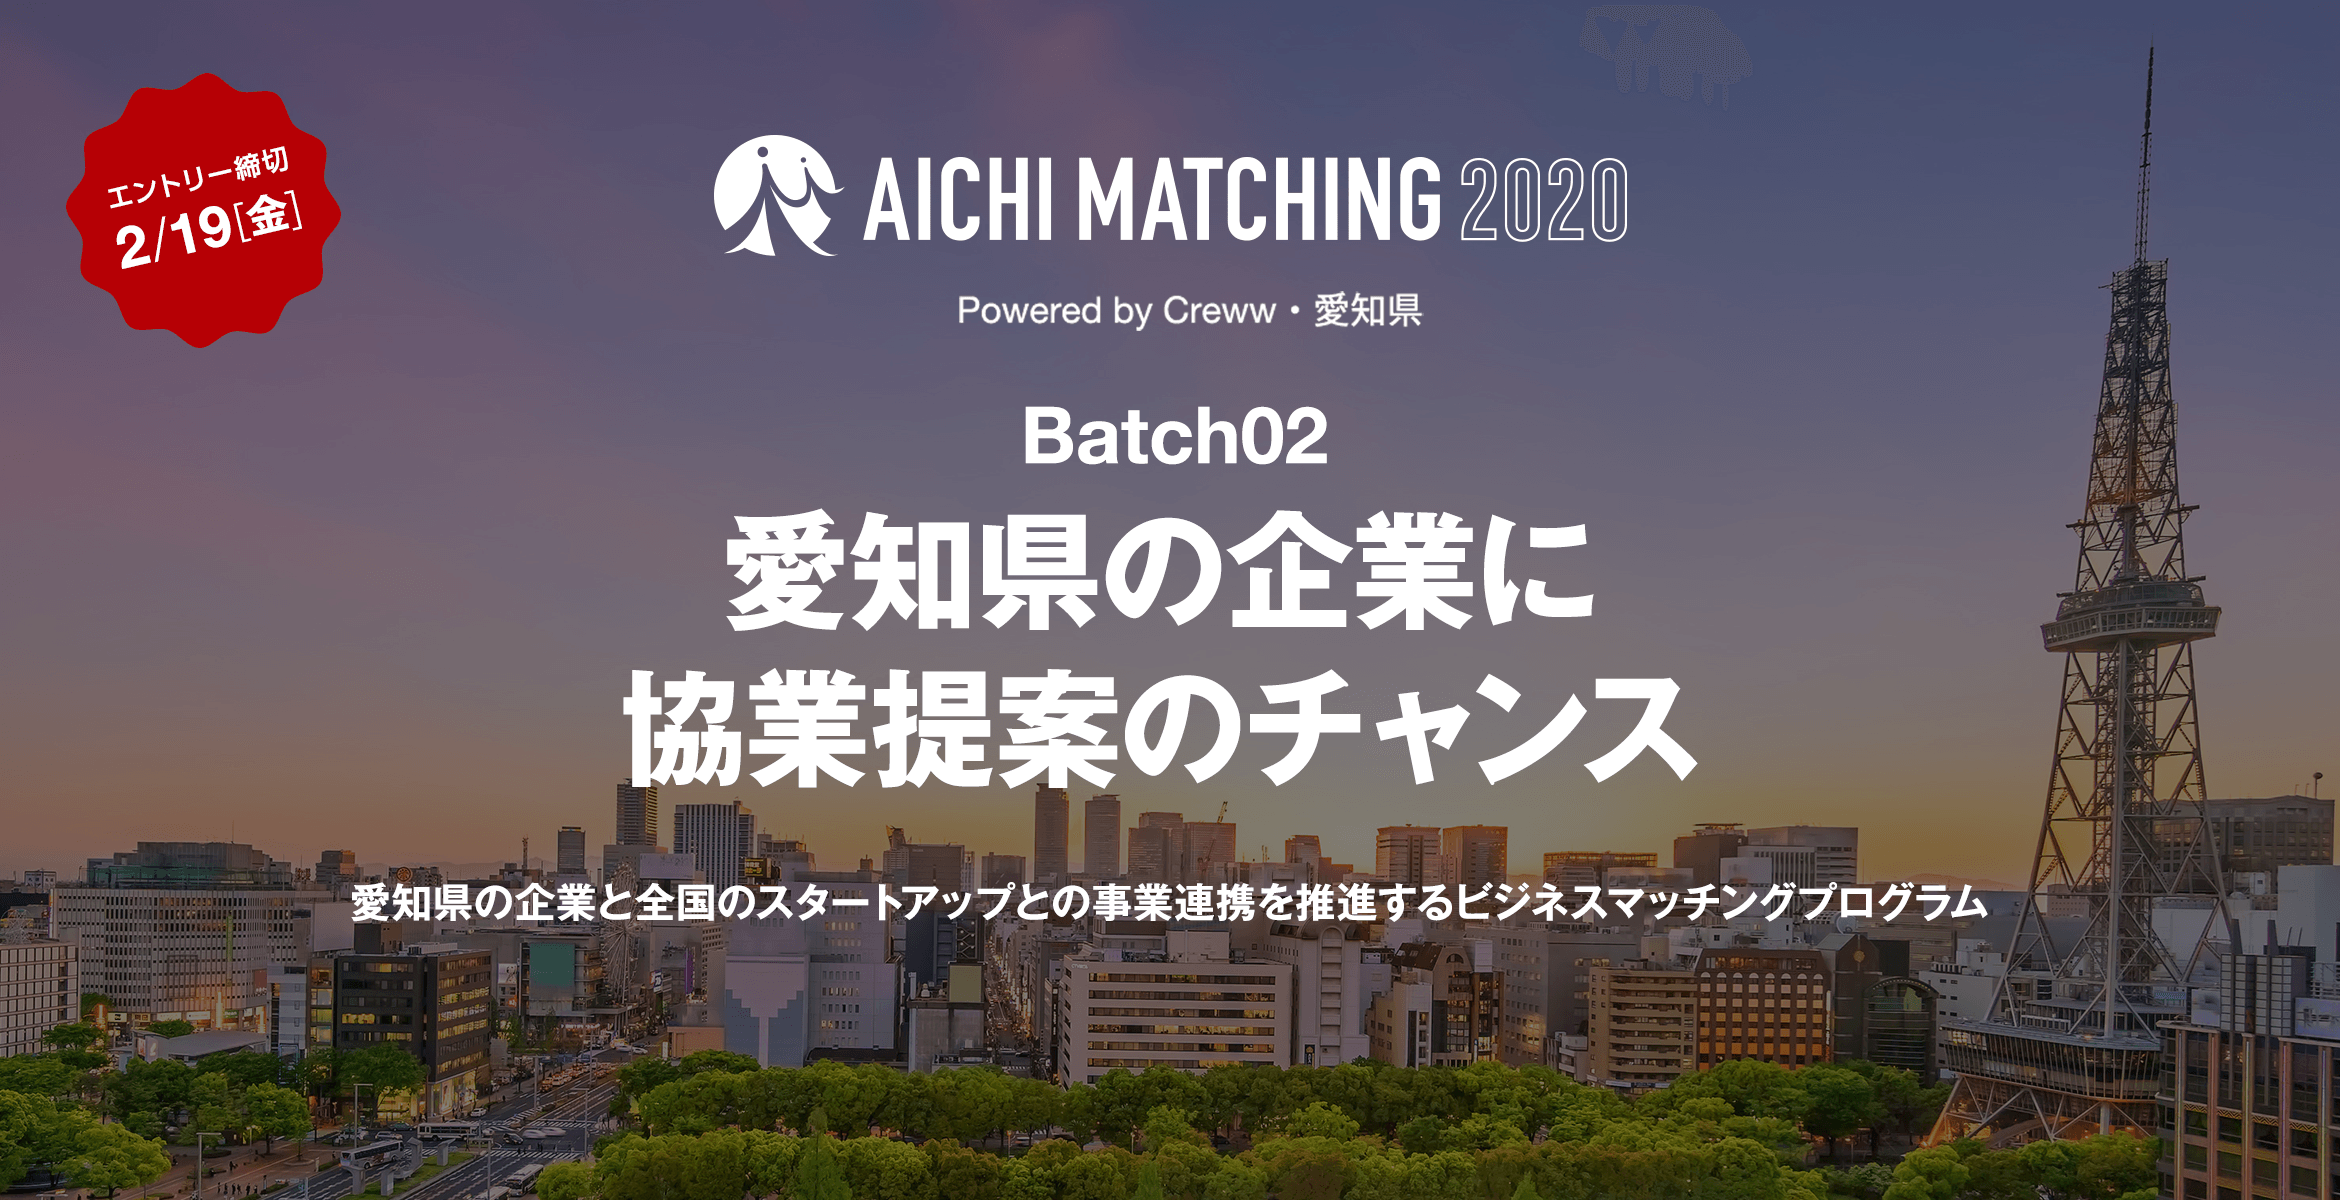 Aichi Matching 2020 Batch02